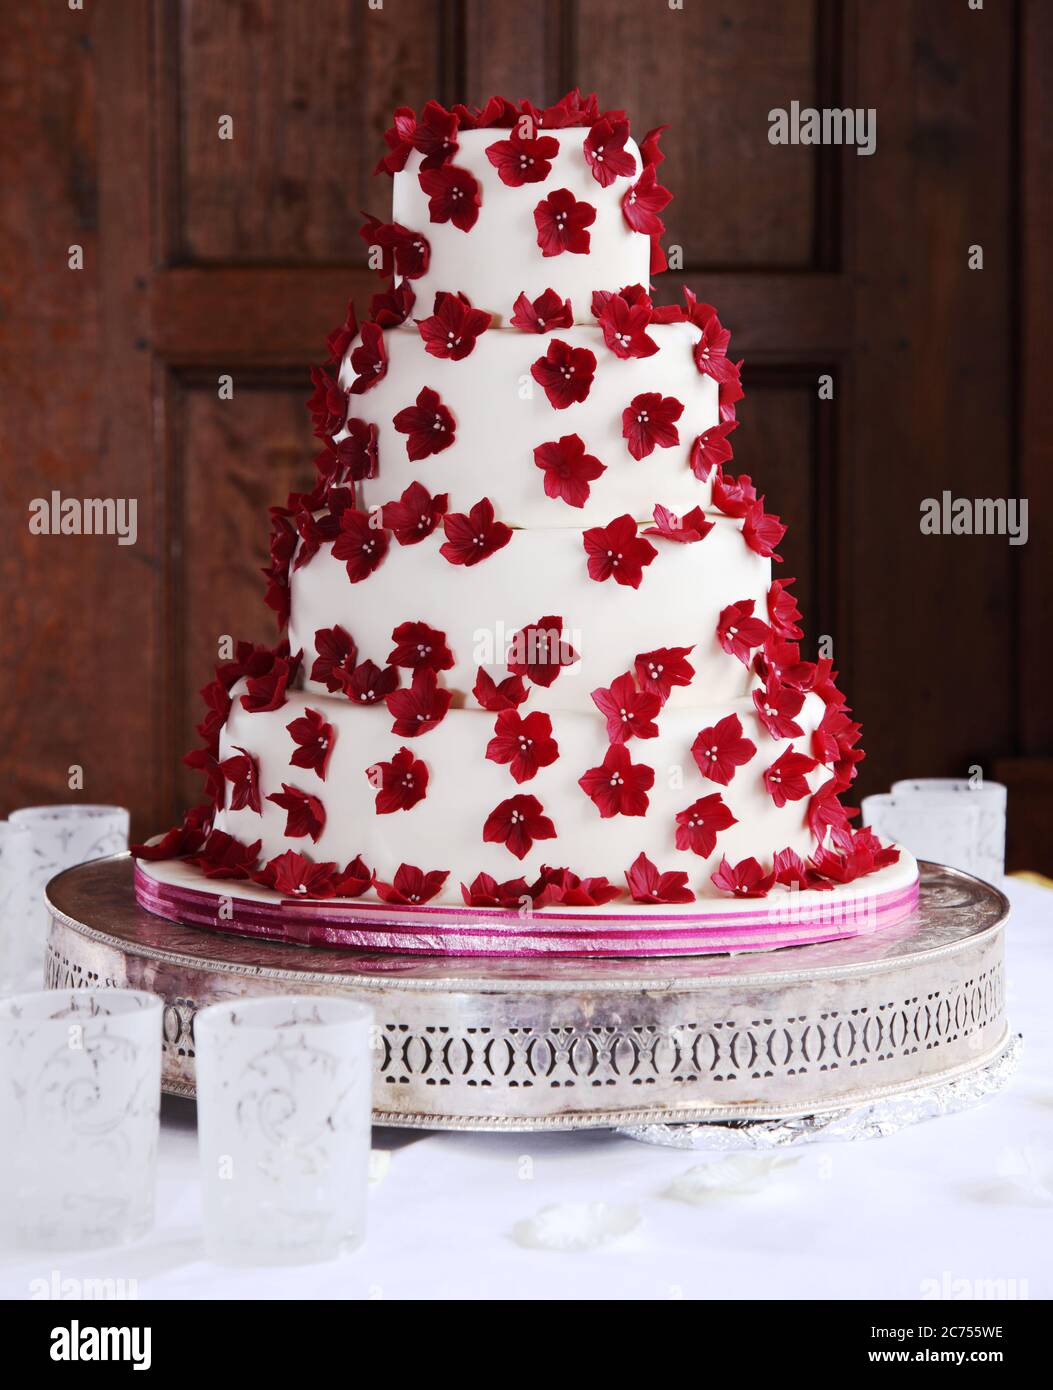 Vierstufiger Hochzeitstorte mit roten Eiszucker-Blüten Stockfoto